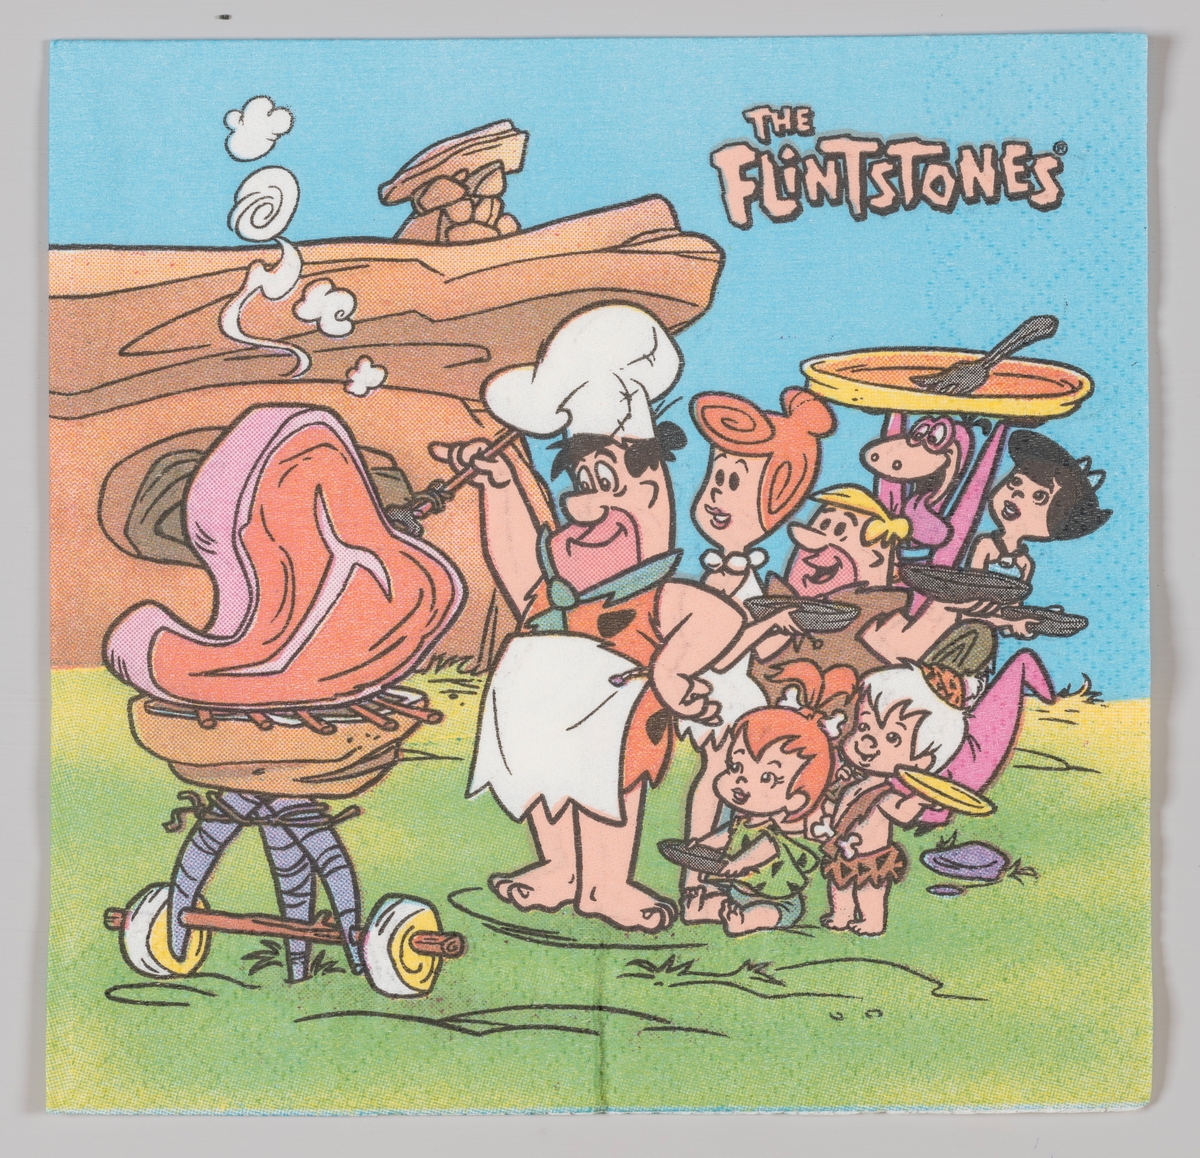 Familien Flintstone (norsk Flint) griler sammen med venner og familie.

The Flintstones (norsk Familien Flint) er en amerikansk animert komiserie som kom i 1960. Serien omhandler familien Flint og deres venner i byen Bedrock i steinalderen. I 1994 kom en film om The Flintstones med John Goodman i hovedrollen.